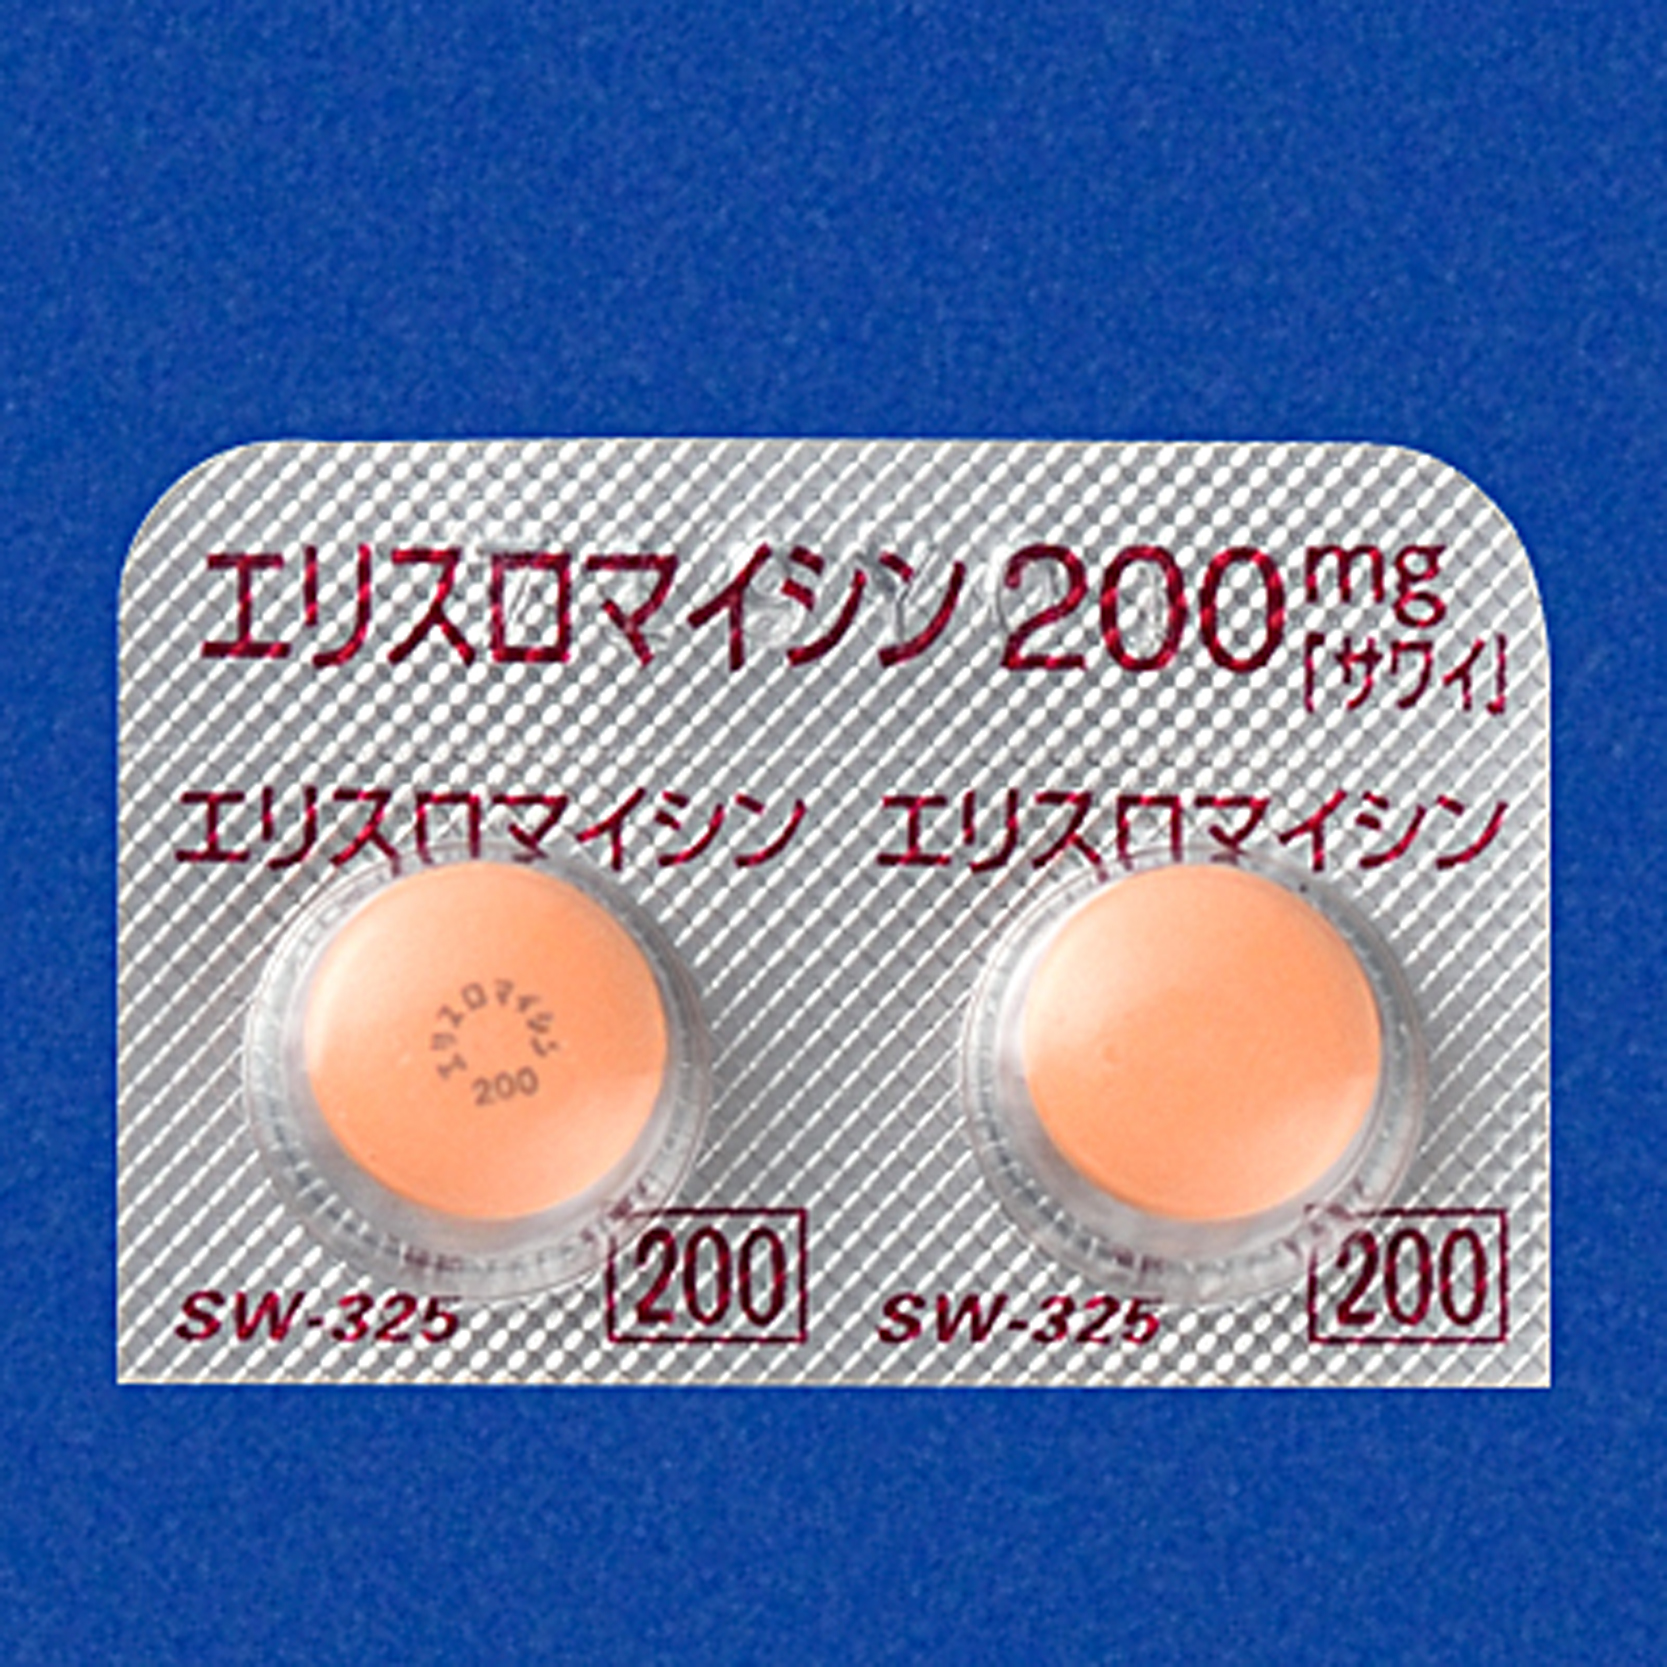 エリスロマイシン錠200mg「サワイ」の包装画像1